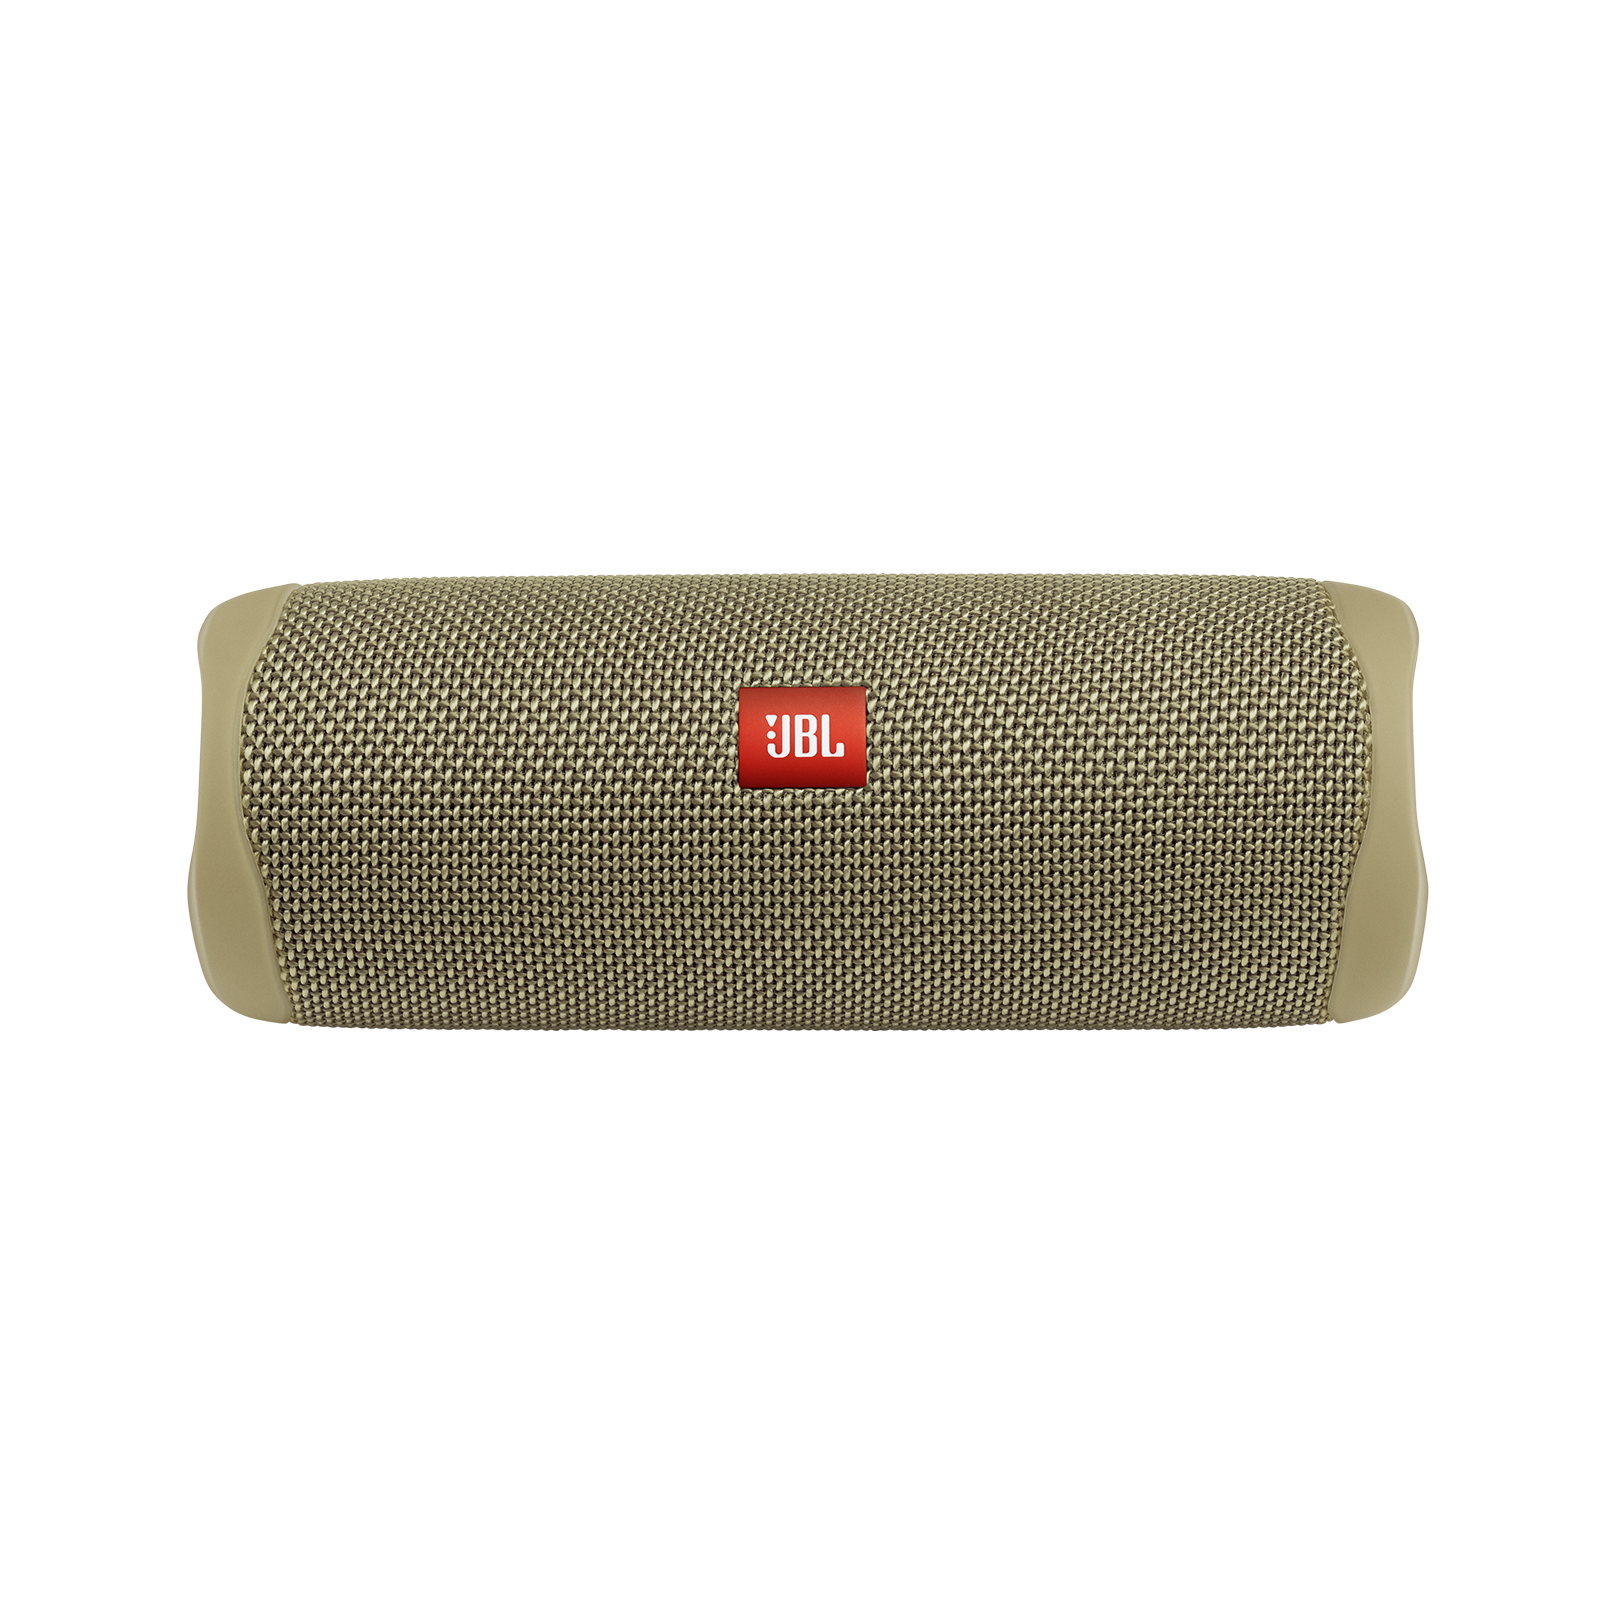 JBL Flip 5 - Sand - Portable Waterproof Speaker - Front